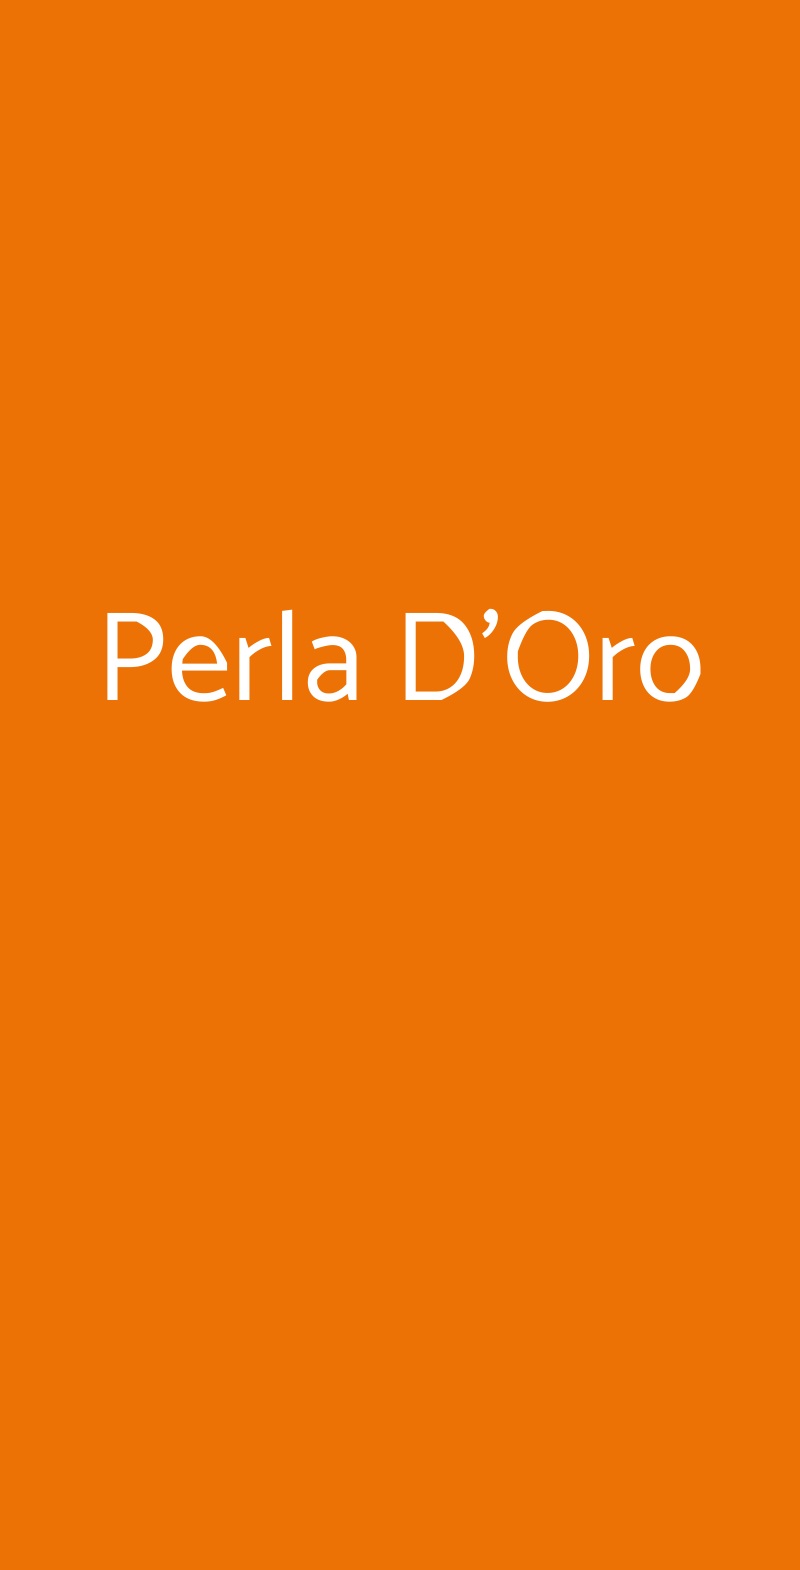 Perla D'Oro Milano menù 1 pagina